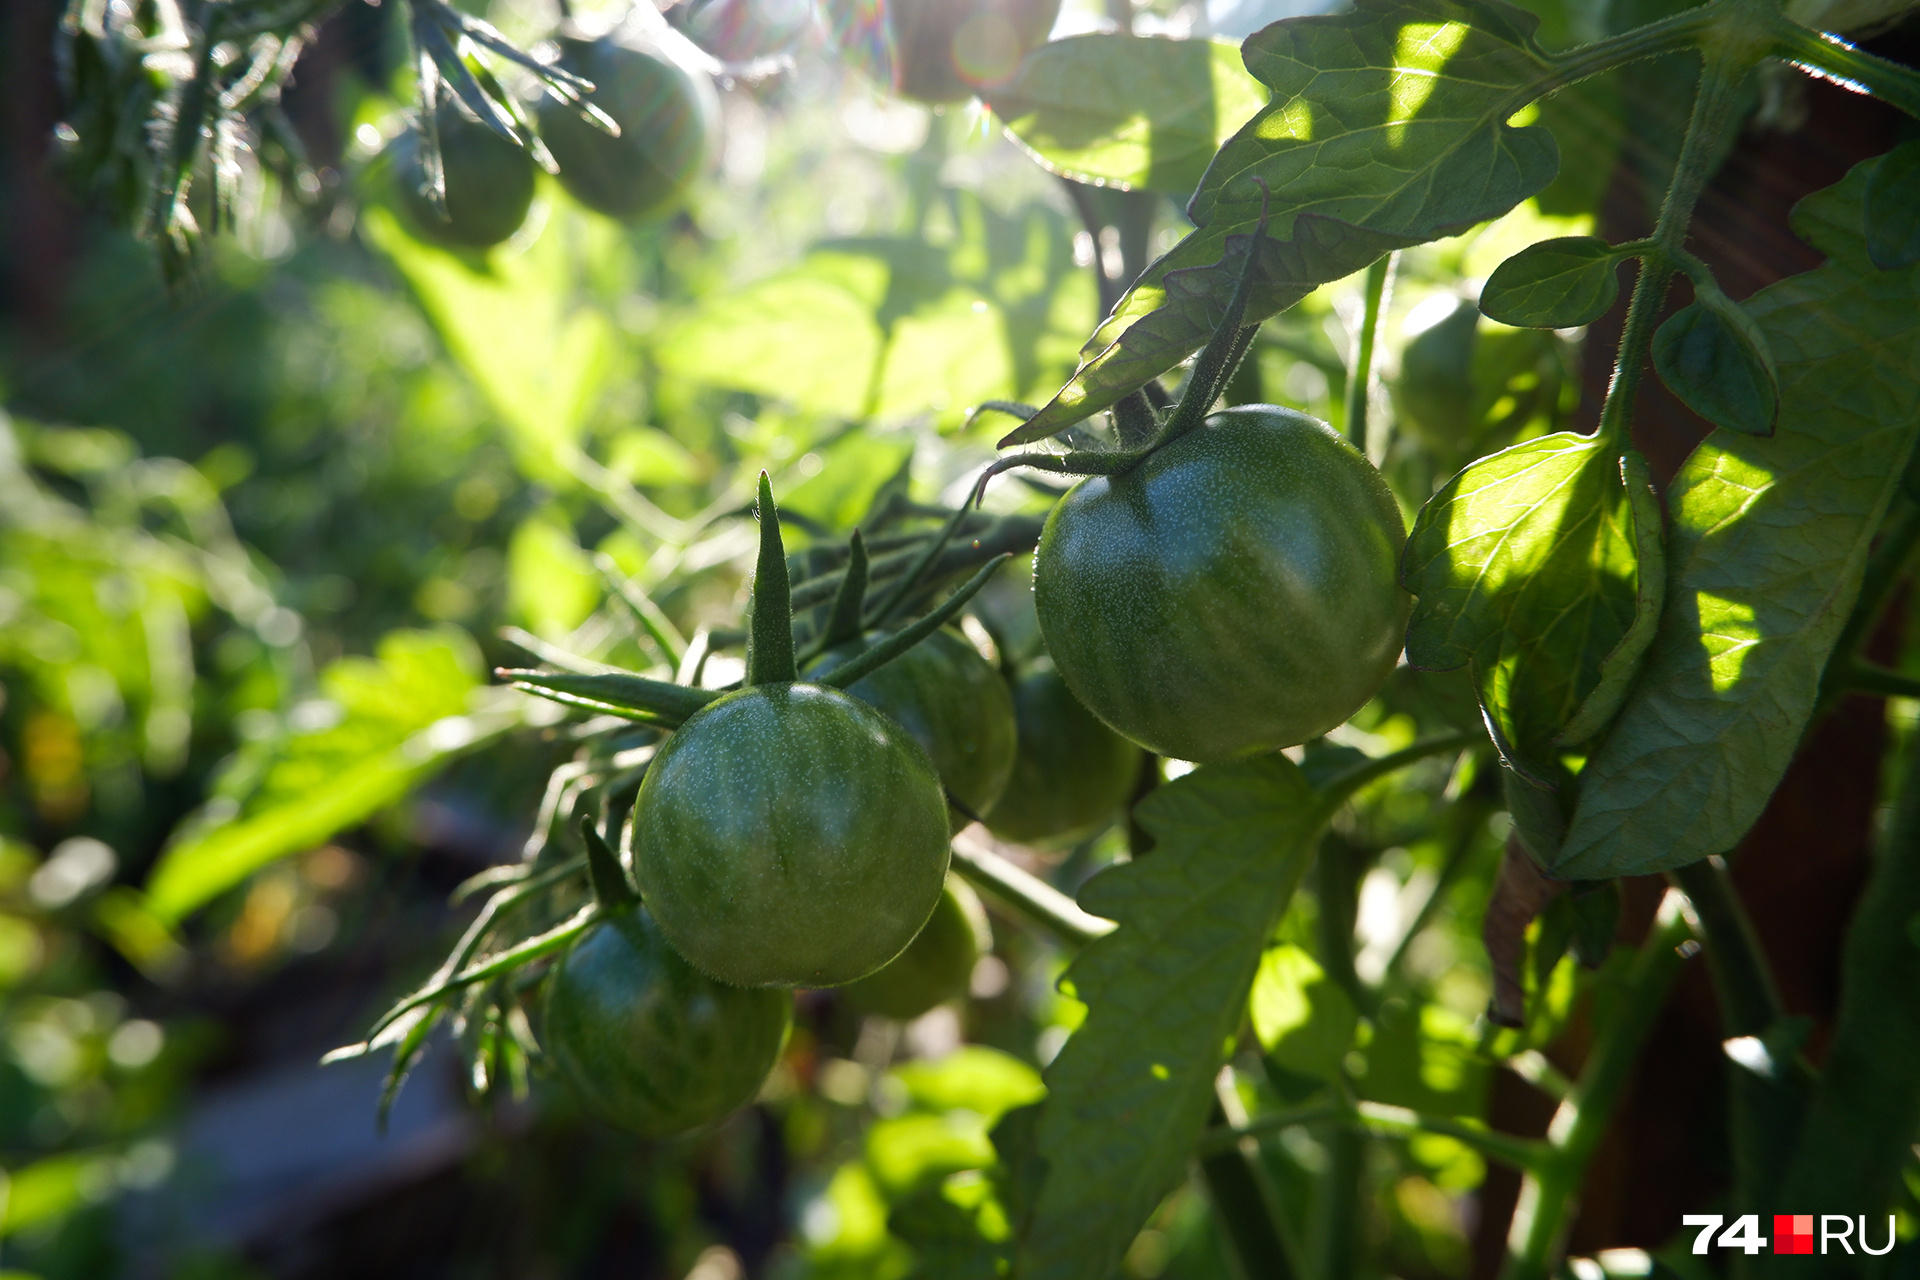 Земля для пикировки томатов должна быть питательной и рыхлой — тогда растения будут хорошо развиваться